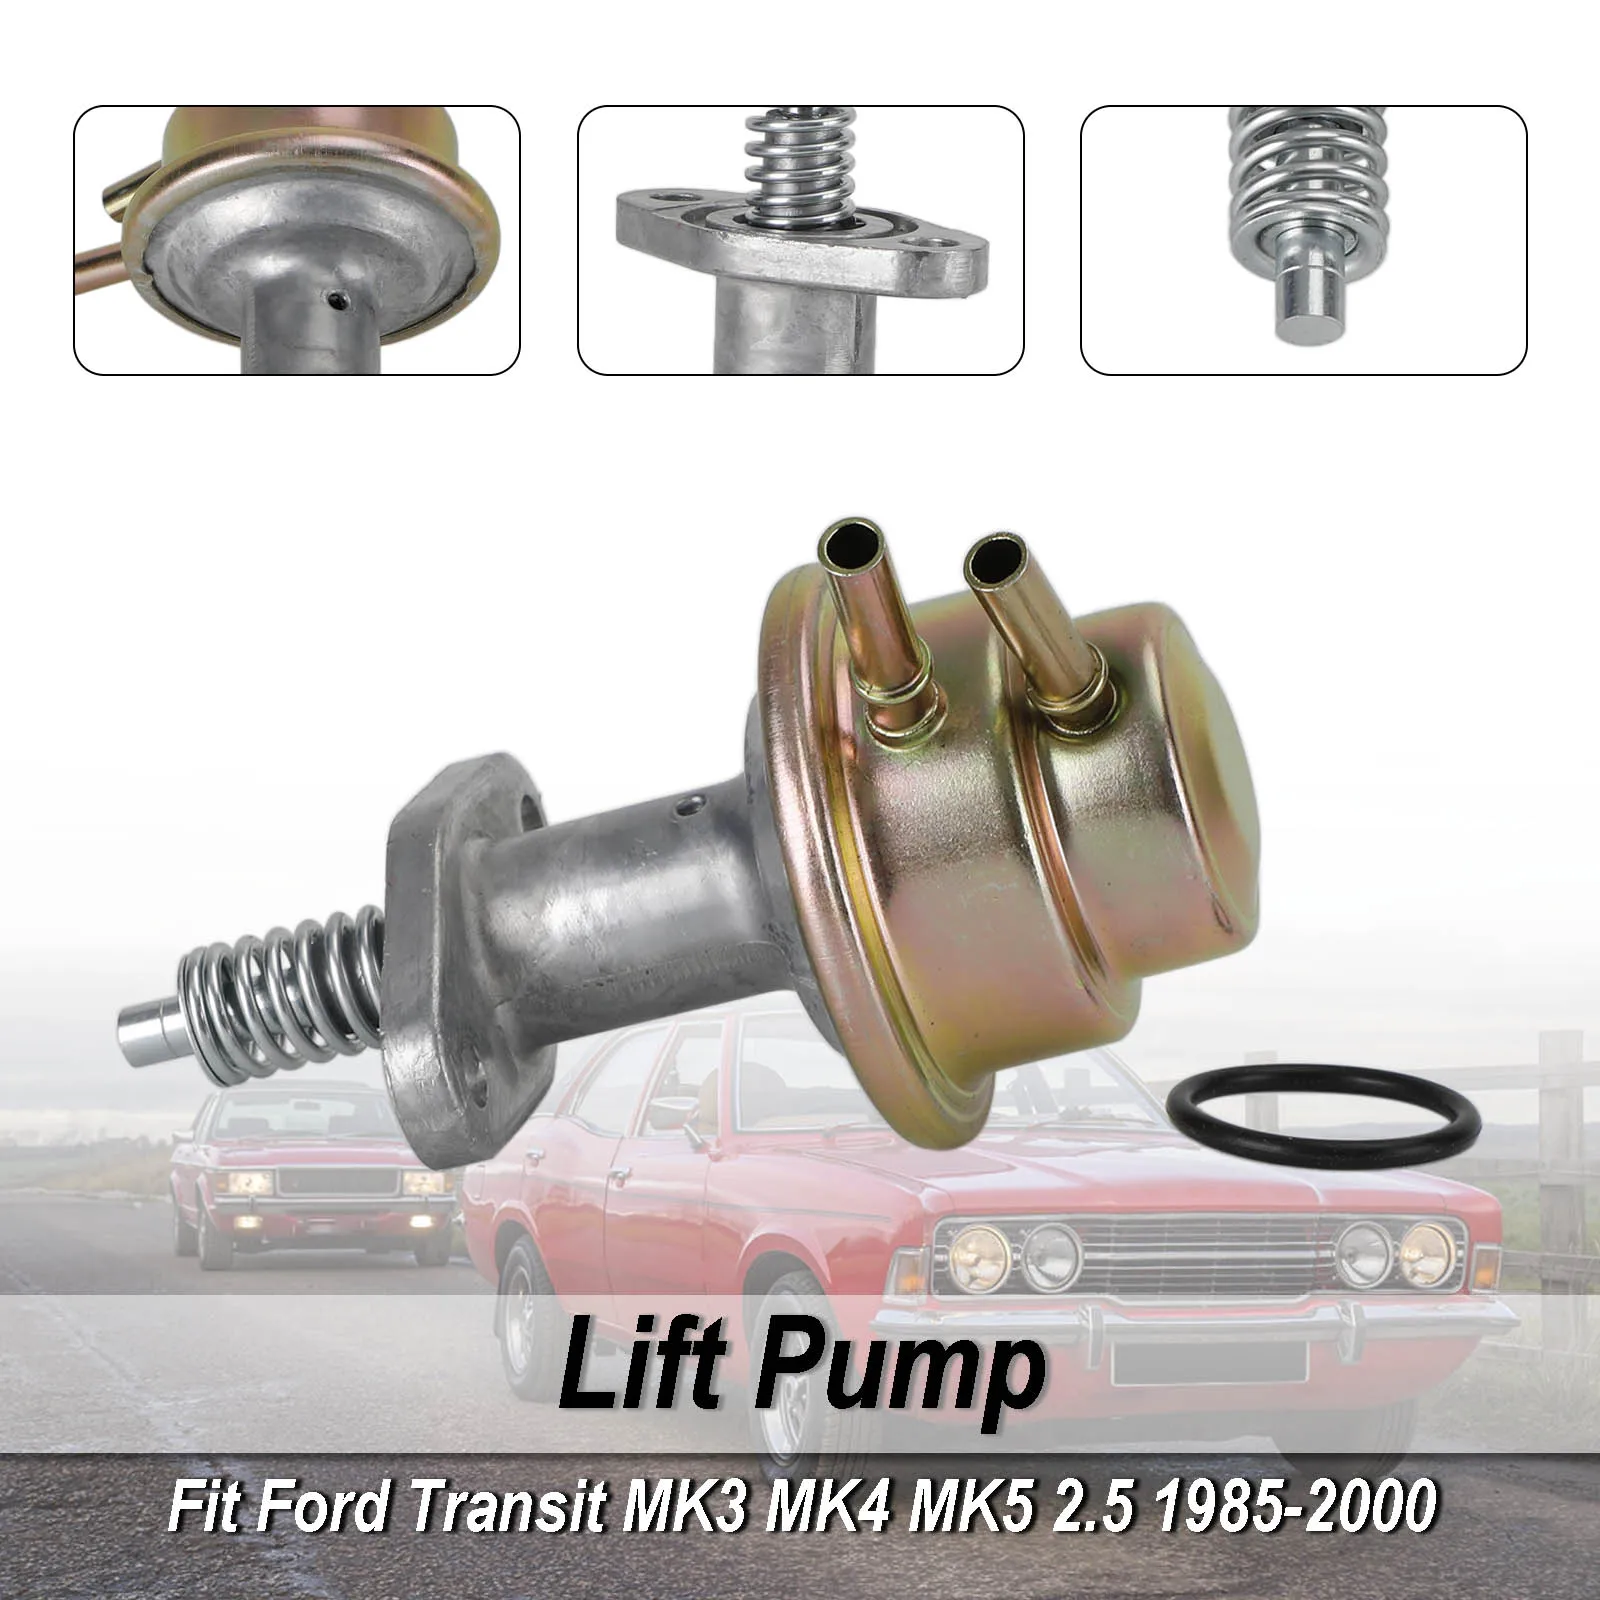 

Topteng Fuel Lift Pump 1035875 Fit For Ford Transit MK3 MK4 MK5 2.5 1985-2000 Diesel